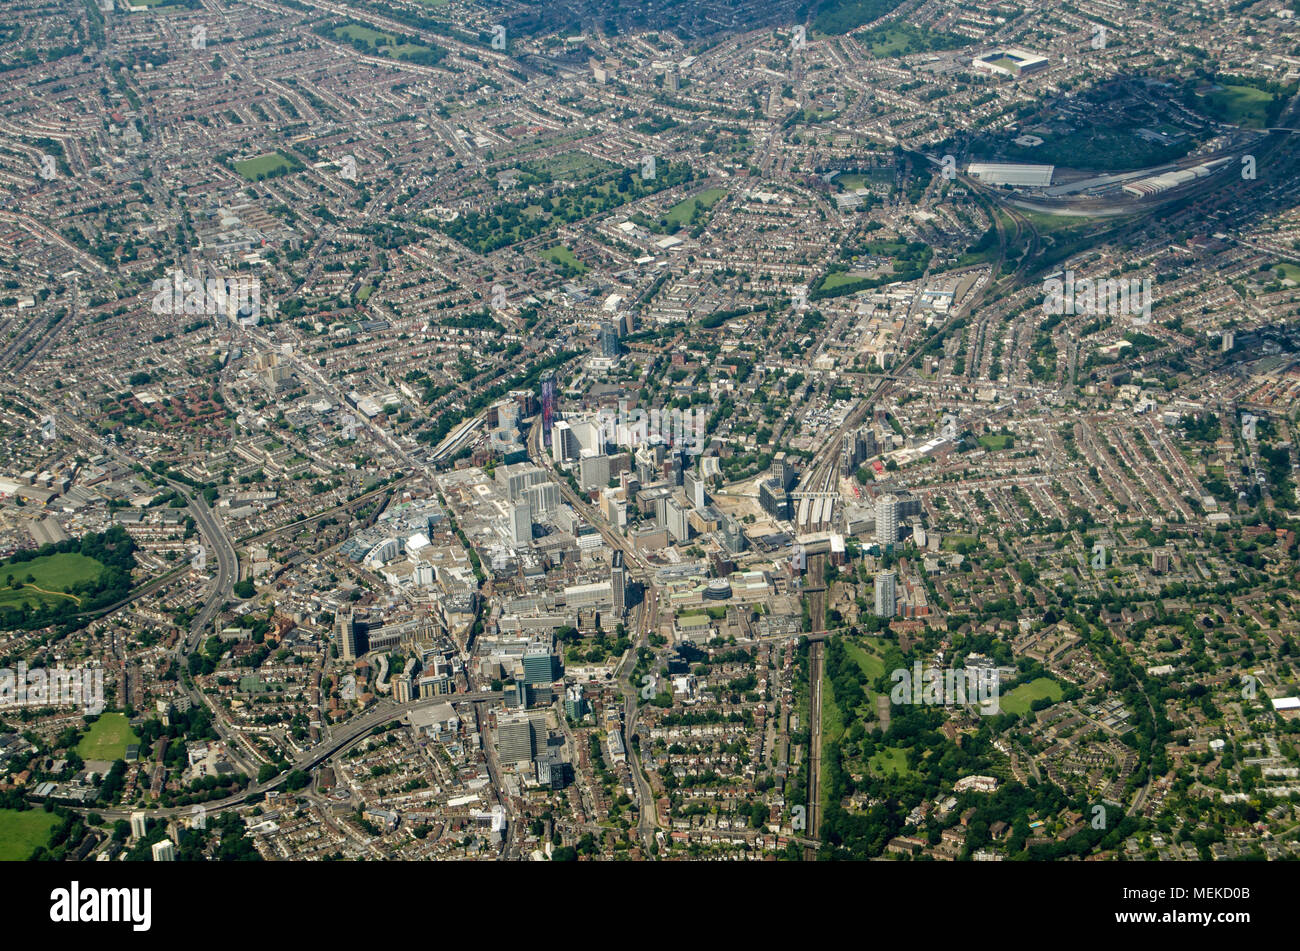 Vue depuis le nord de l'air à l'ensemble de Croydon, dans le sud de Londres. L'équipe de football de Crystal Palace accueil rez de Selhurst Park est vers le haut à droite Banque D'Images